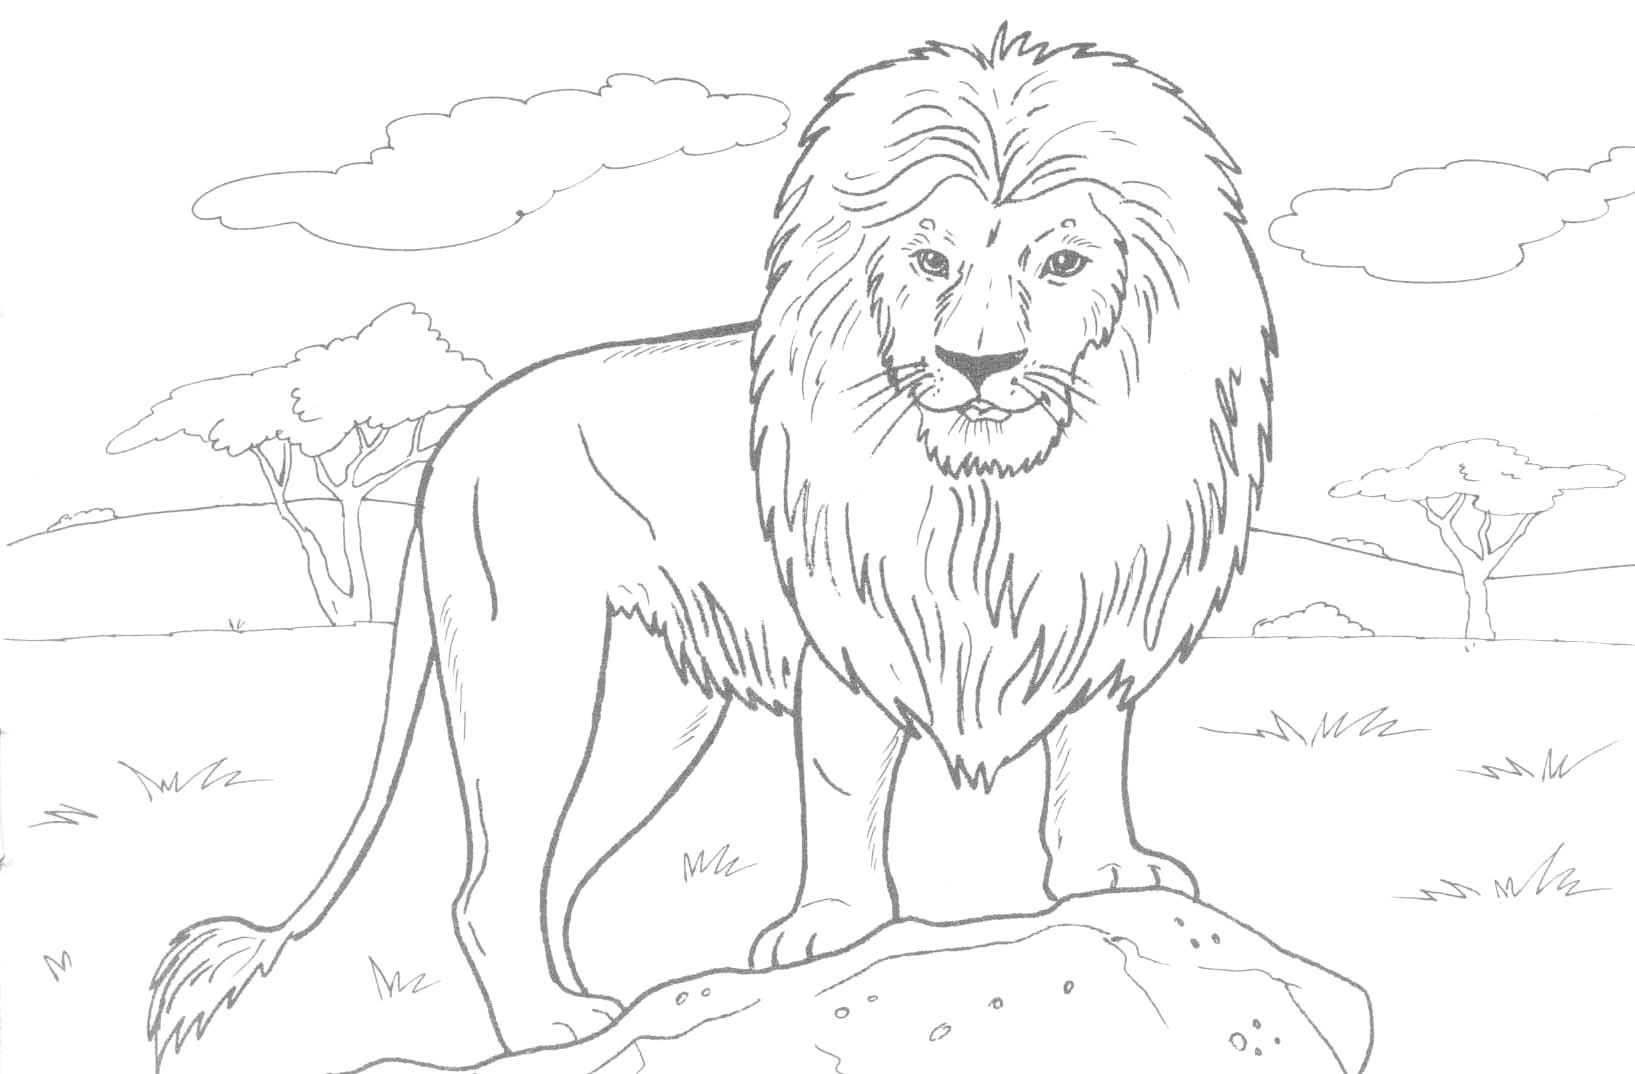 Проект по окружающему миру - Лев-царь зверей